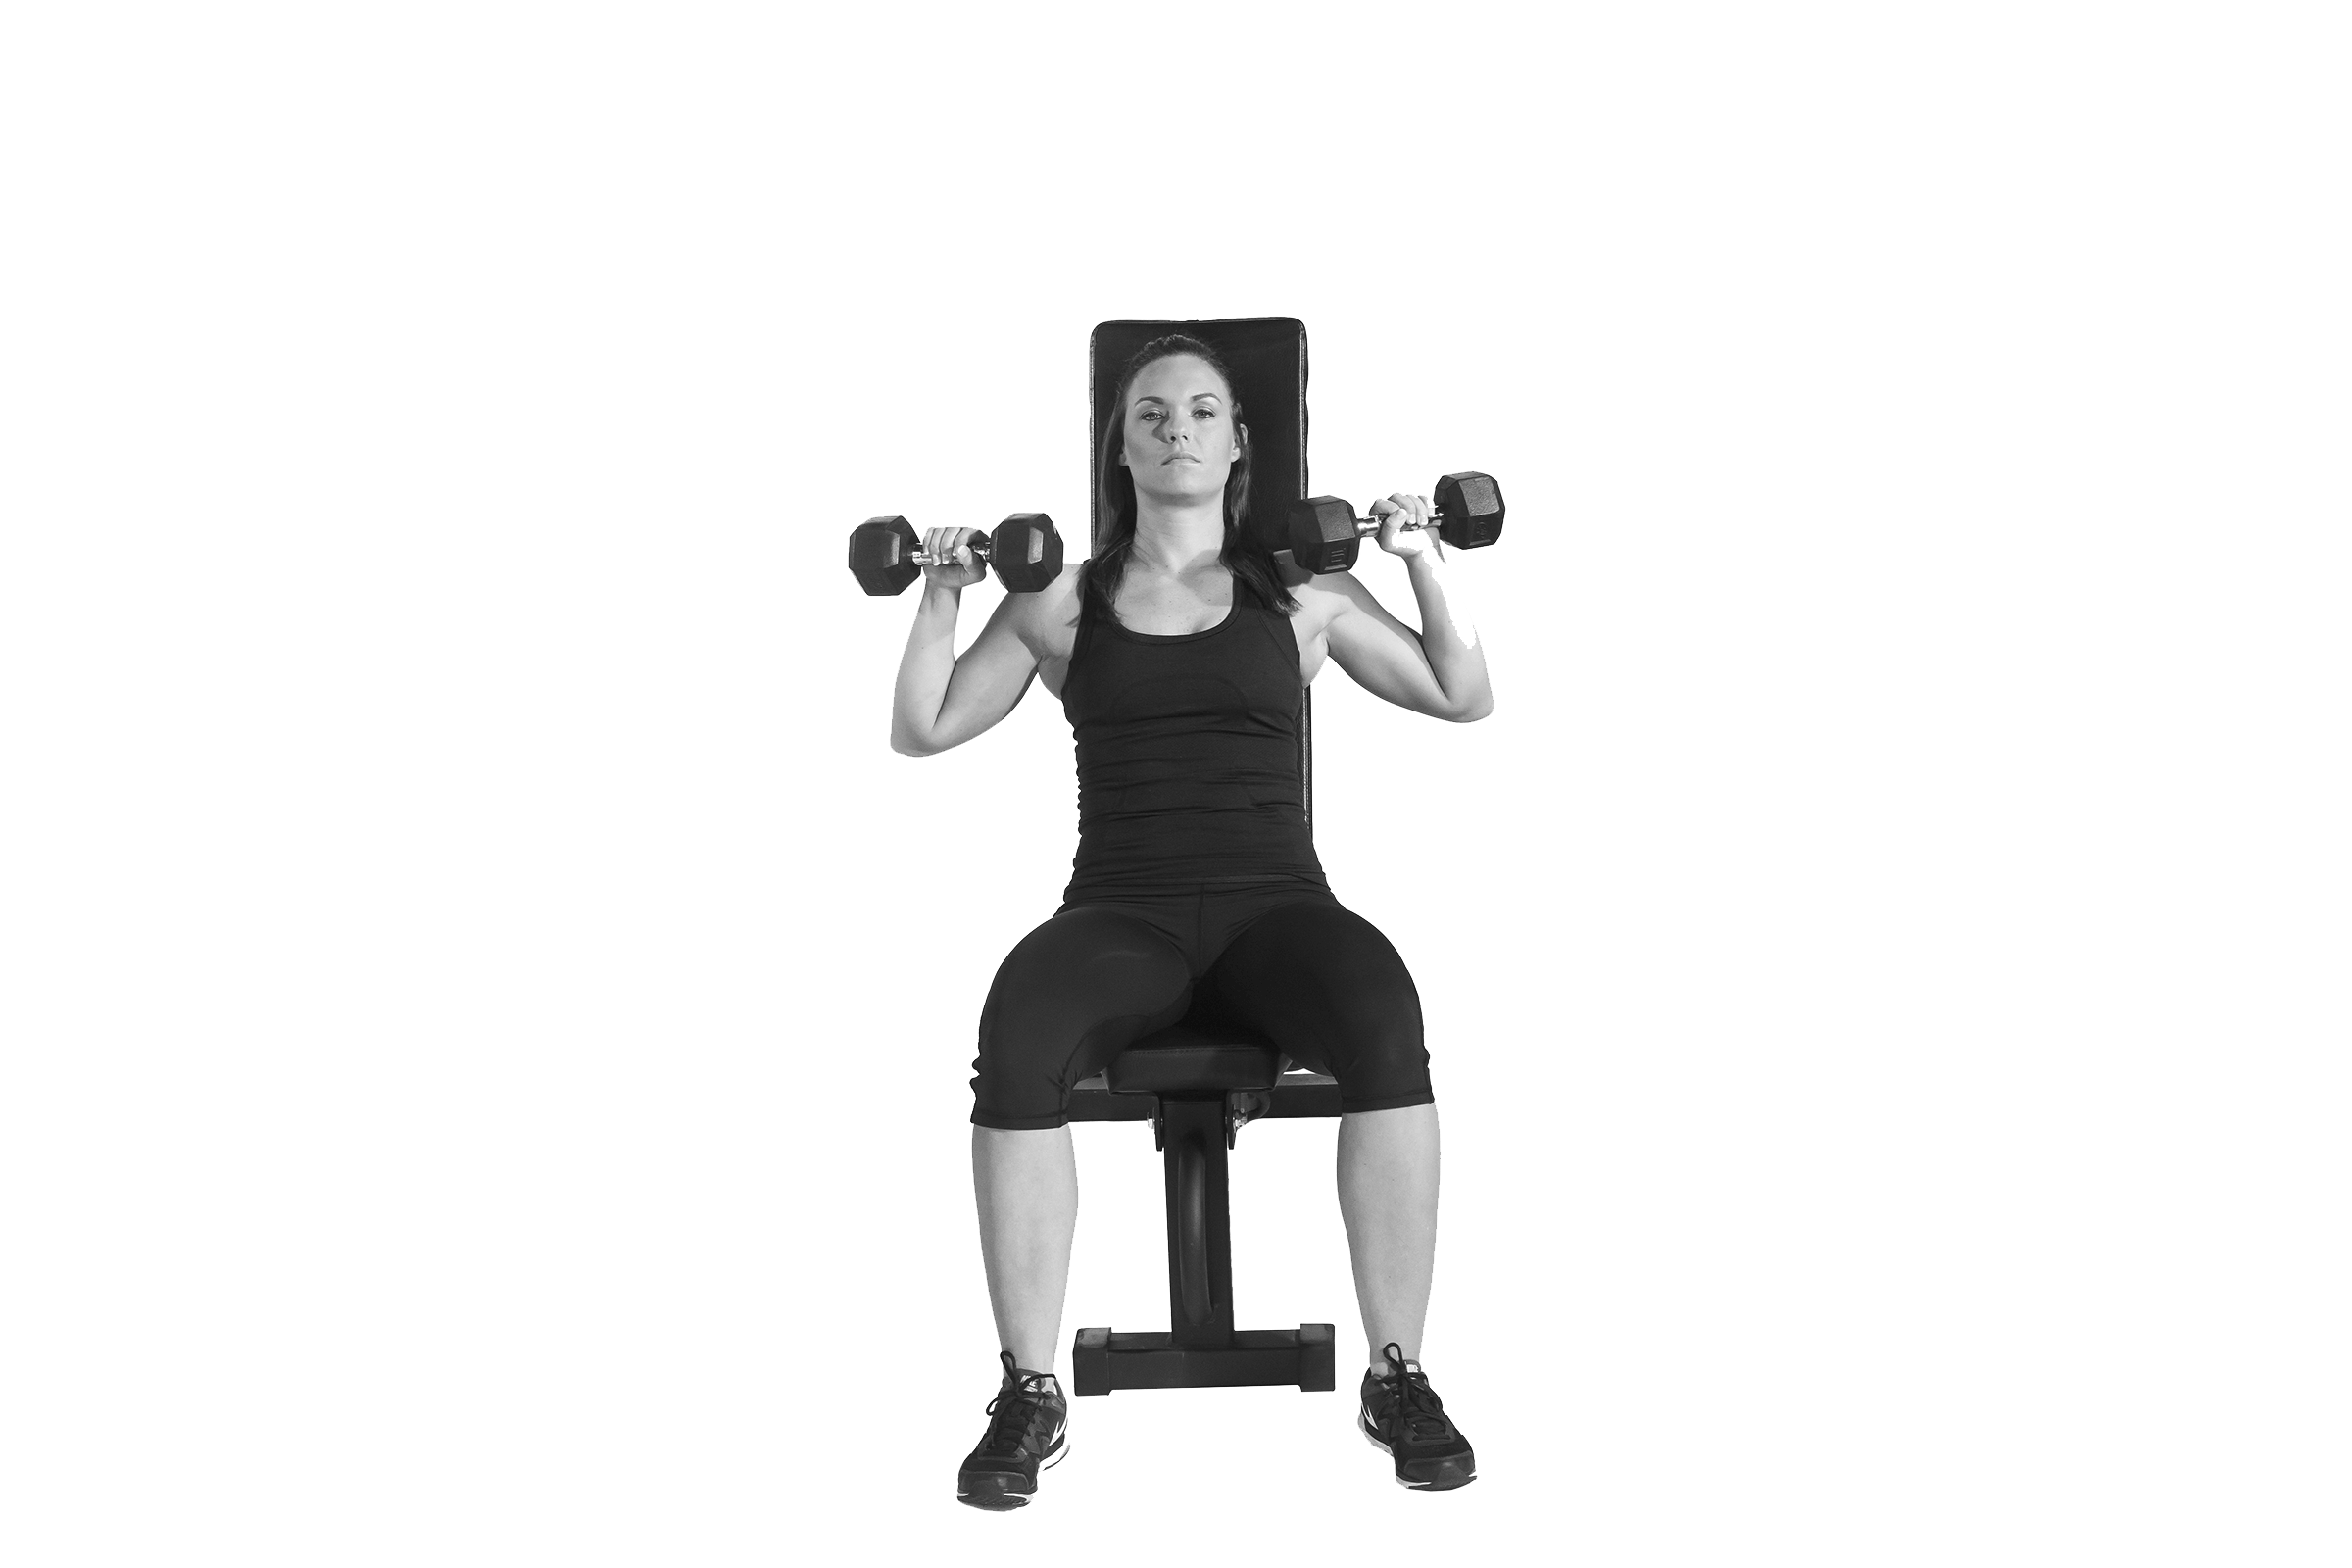 Le développé assis fait partie des exercices recommandés pour muscler le haut du corps.